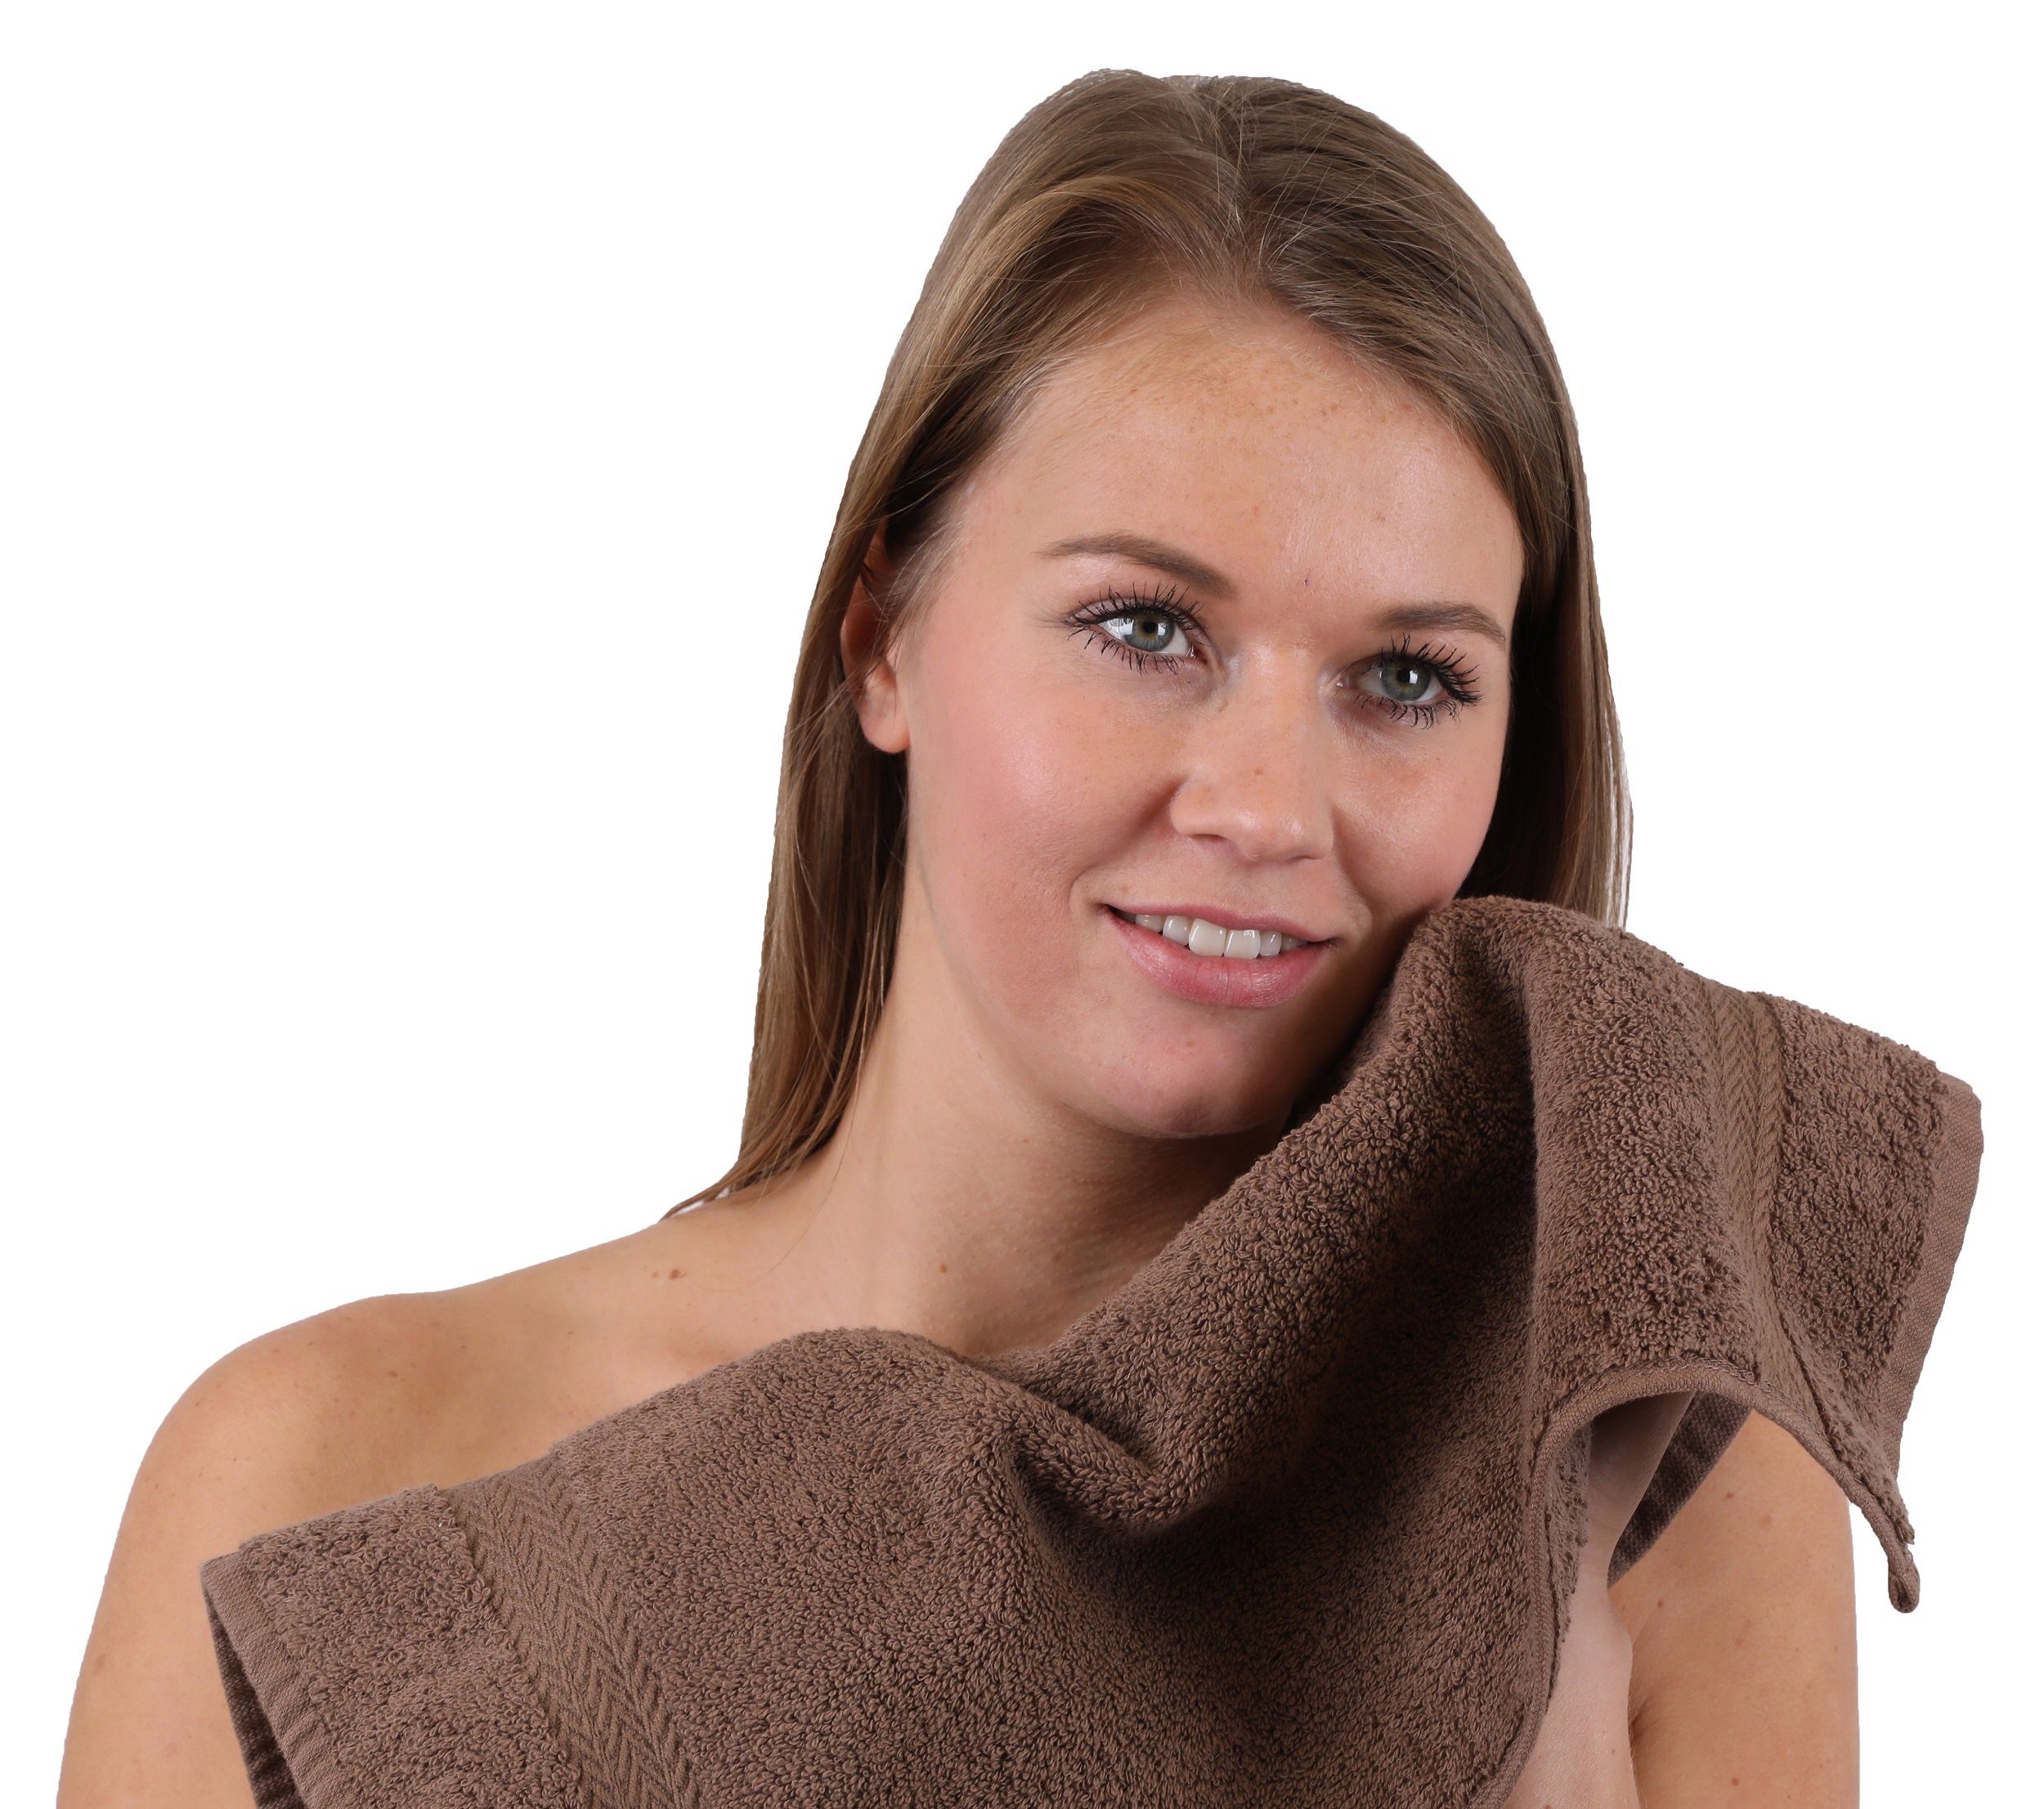 und nussbraun 10-TLG. 100% Betz beige, Classic Baumwolle Farbe Handtuch Set Handtuch-Set